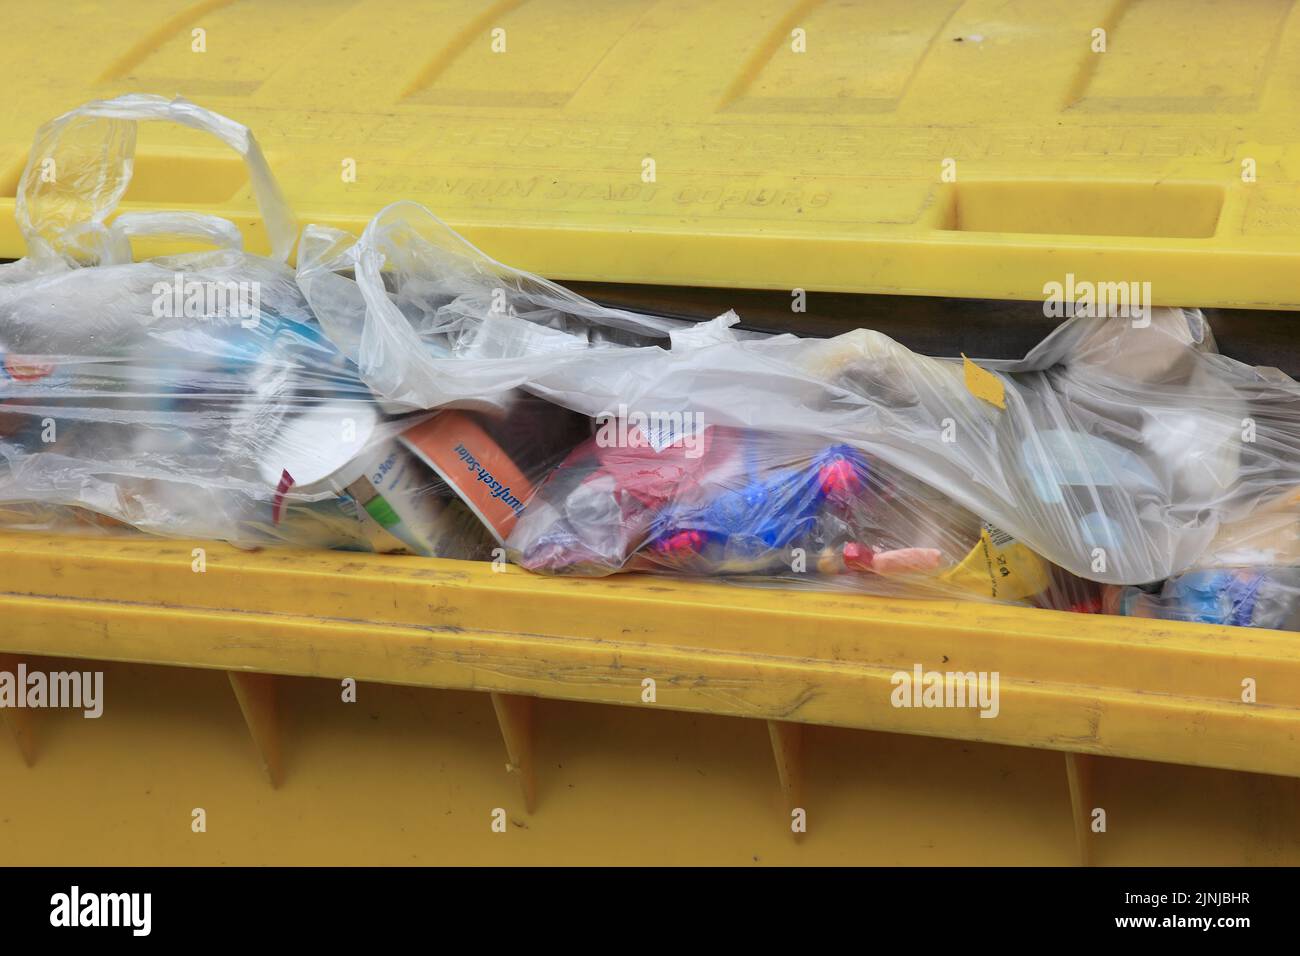 Müllsammlung, gelber Abfallcontainer für Verpackungsabfälle zur Verwendung im Recycling, Kunststoffverpackungen  /  Waste collection, yellow waste con Stock Photo